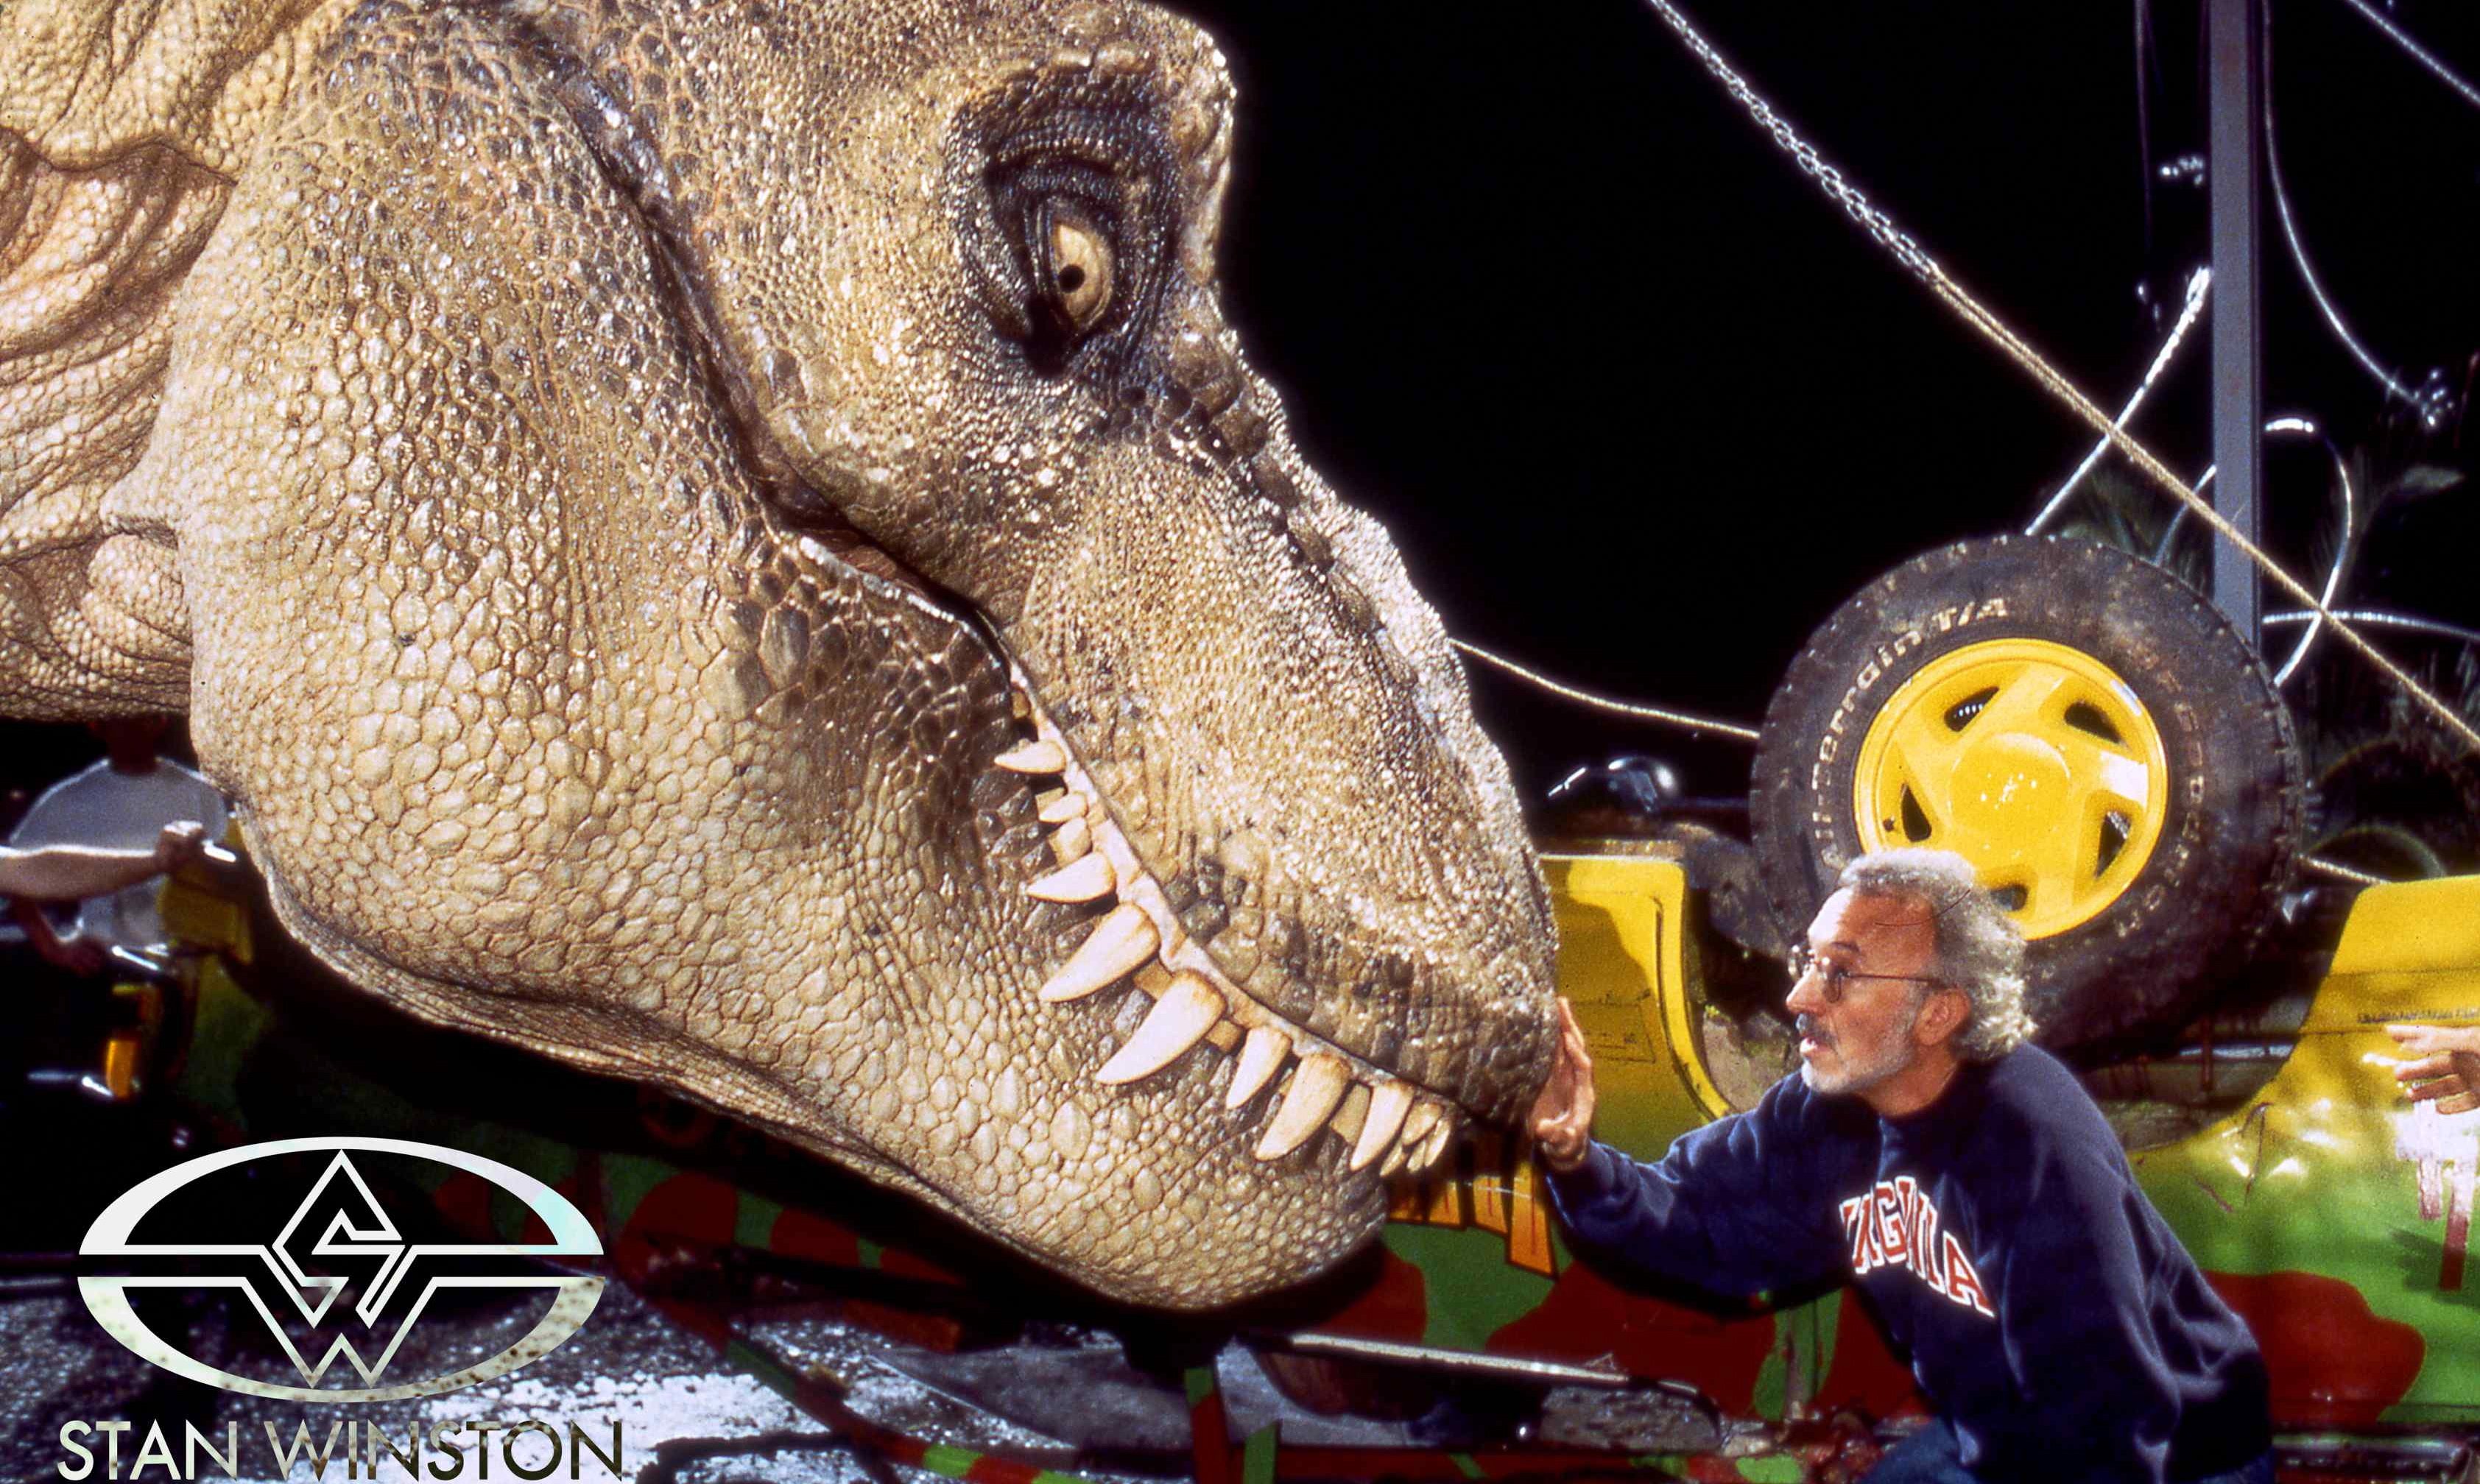 Jurassic Park T-rex robot - As dangerous as a real dinosaur